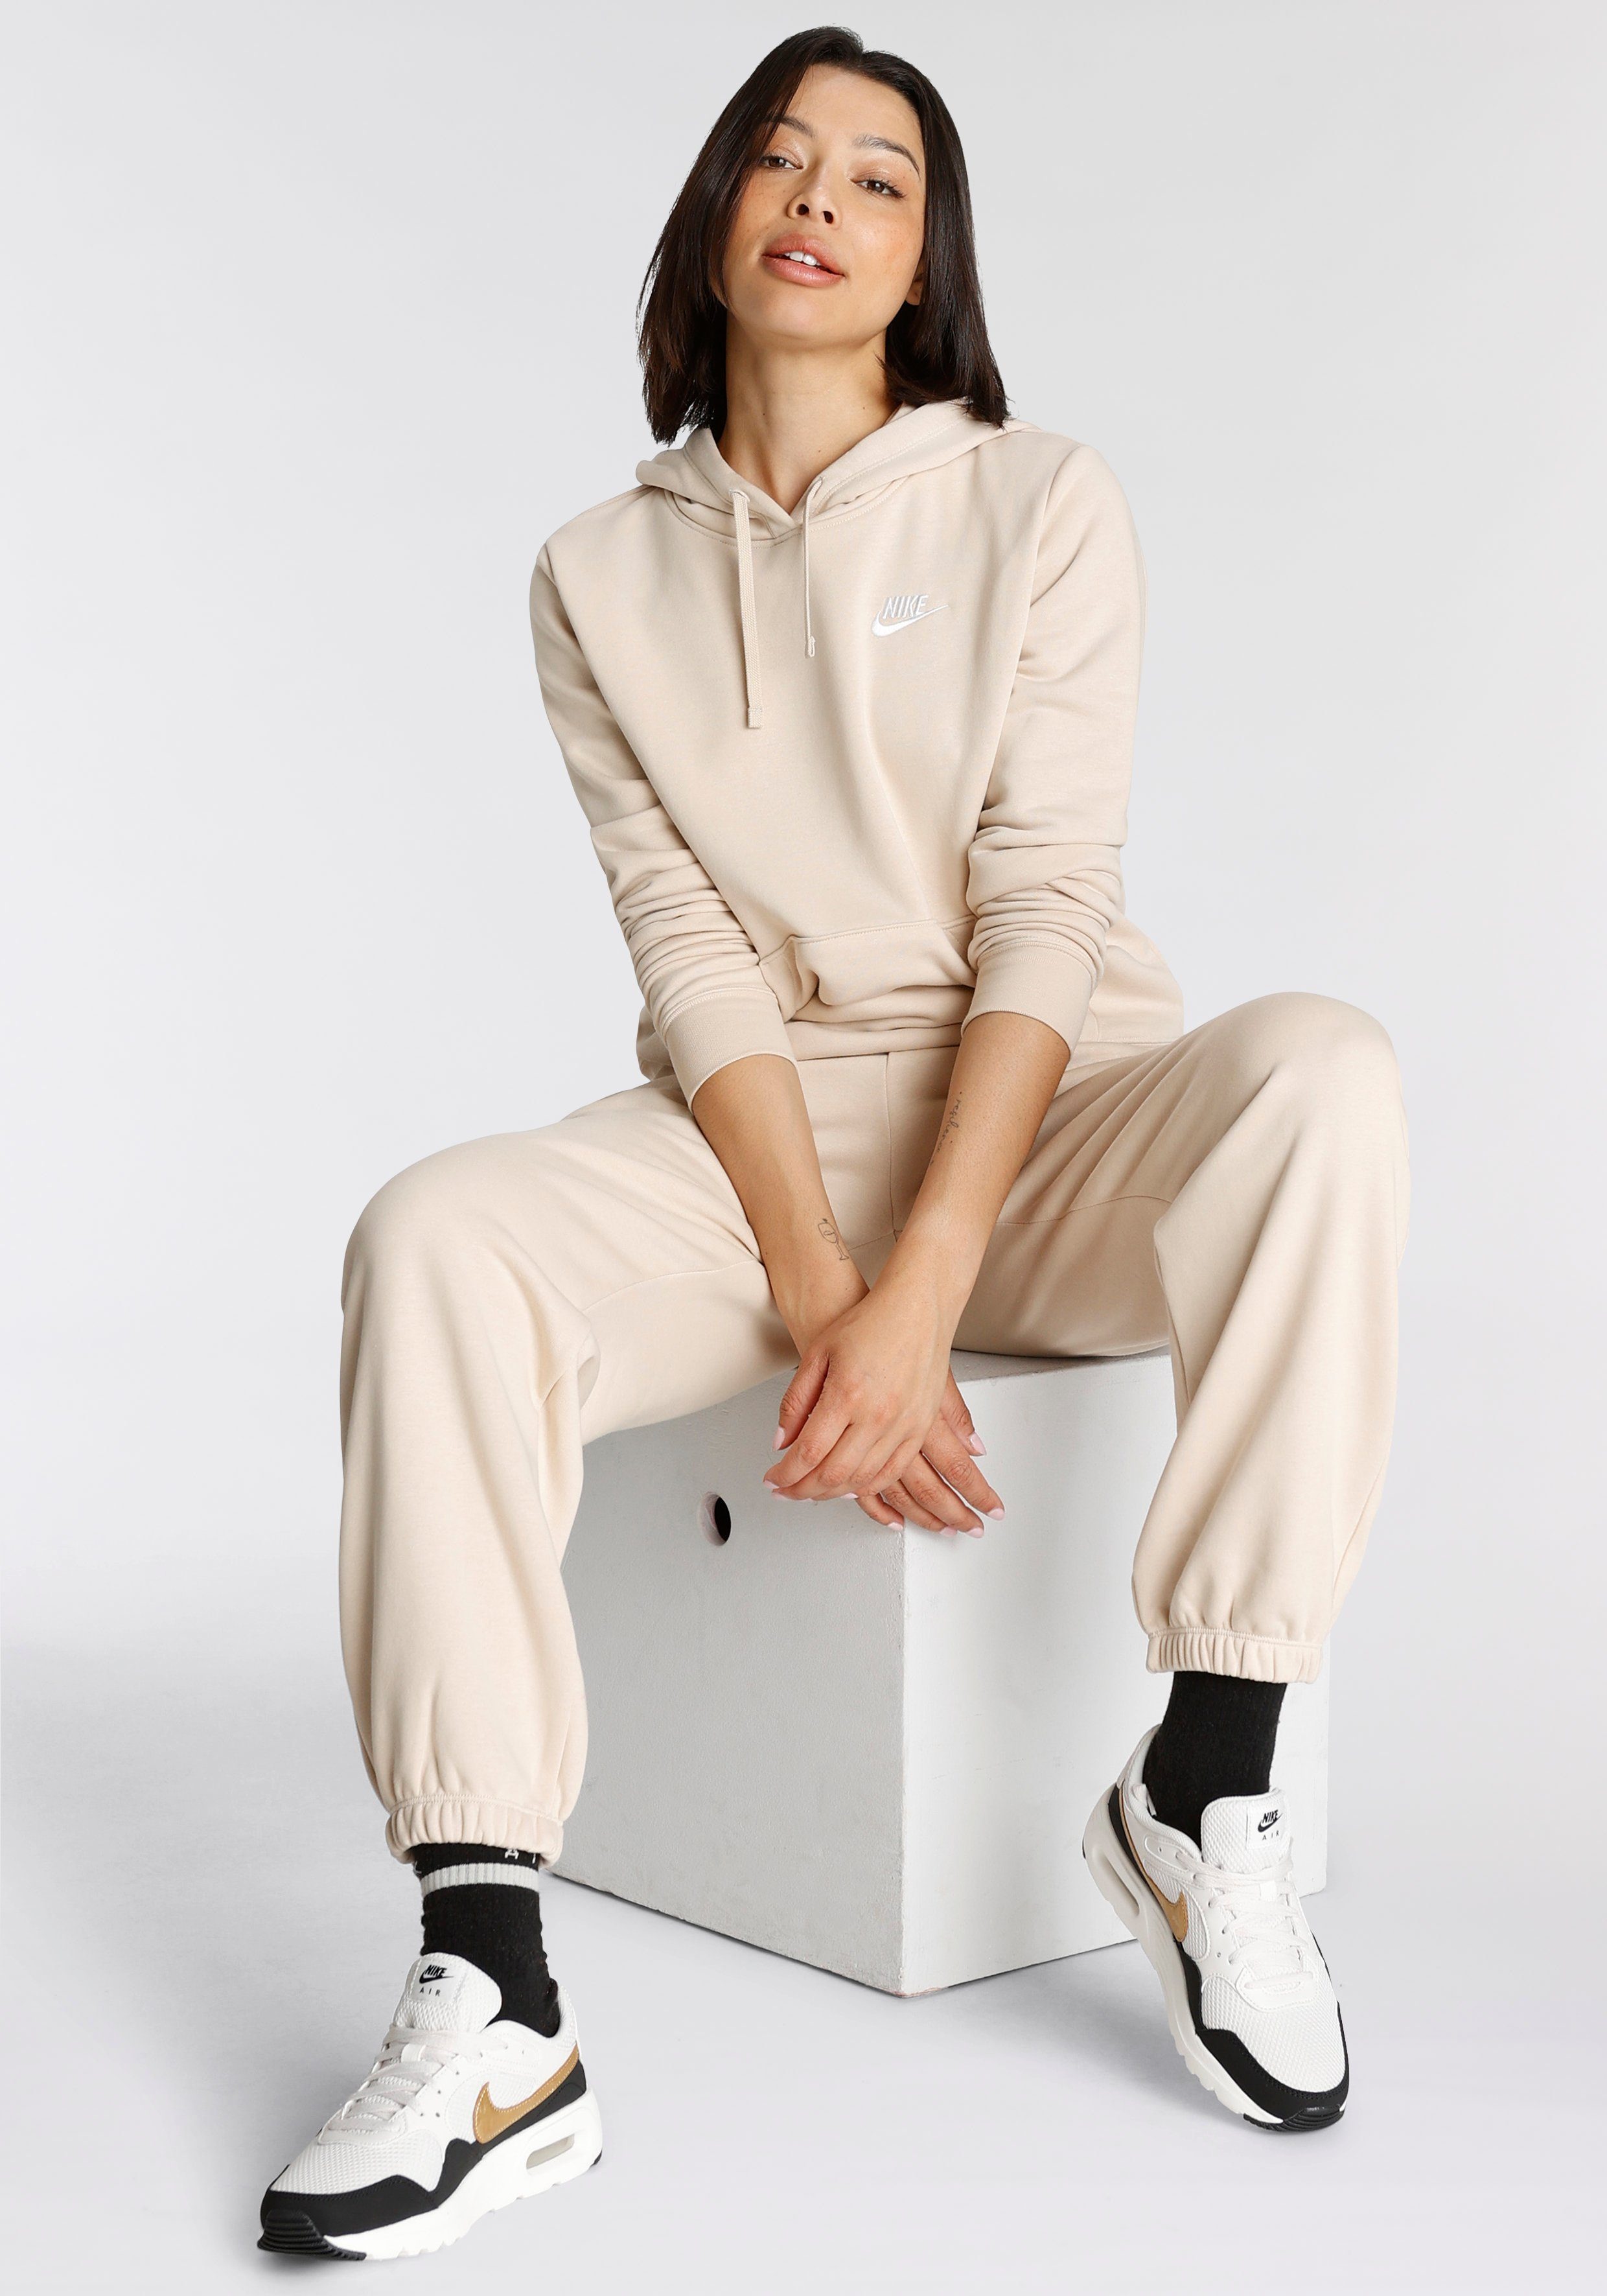 SANDDRIFT/WHITE HOODIE PULLOVER FLEECE Nike WOMEN'S CLUB Sportswear Kapuzensweatshirt